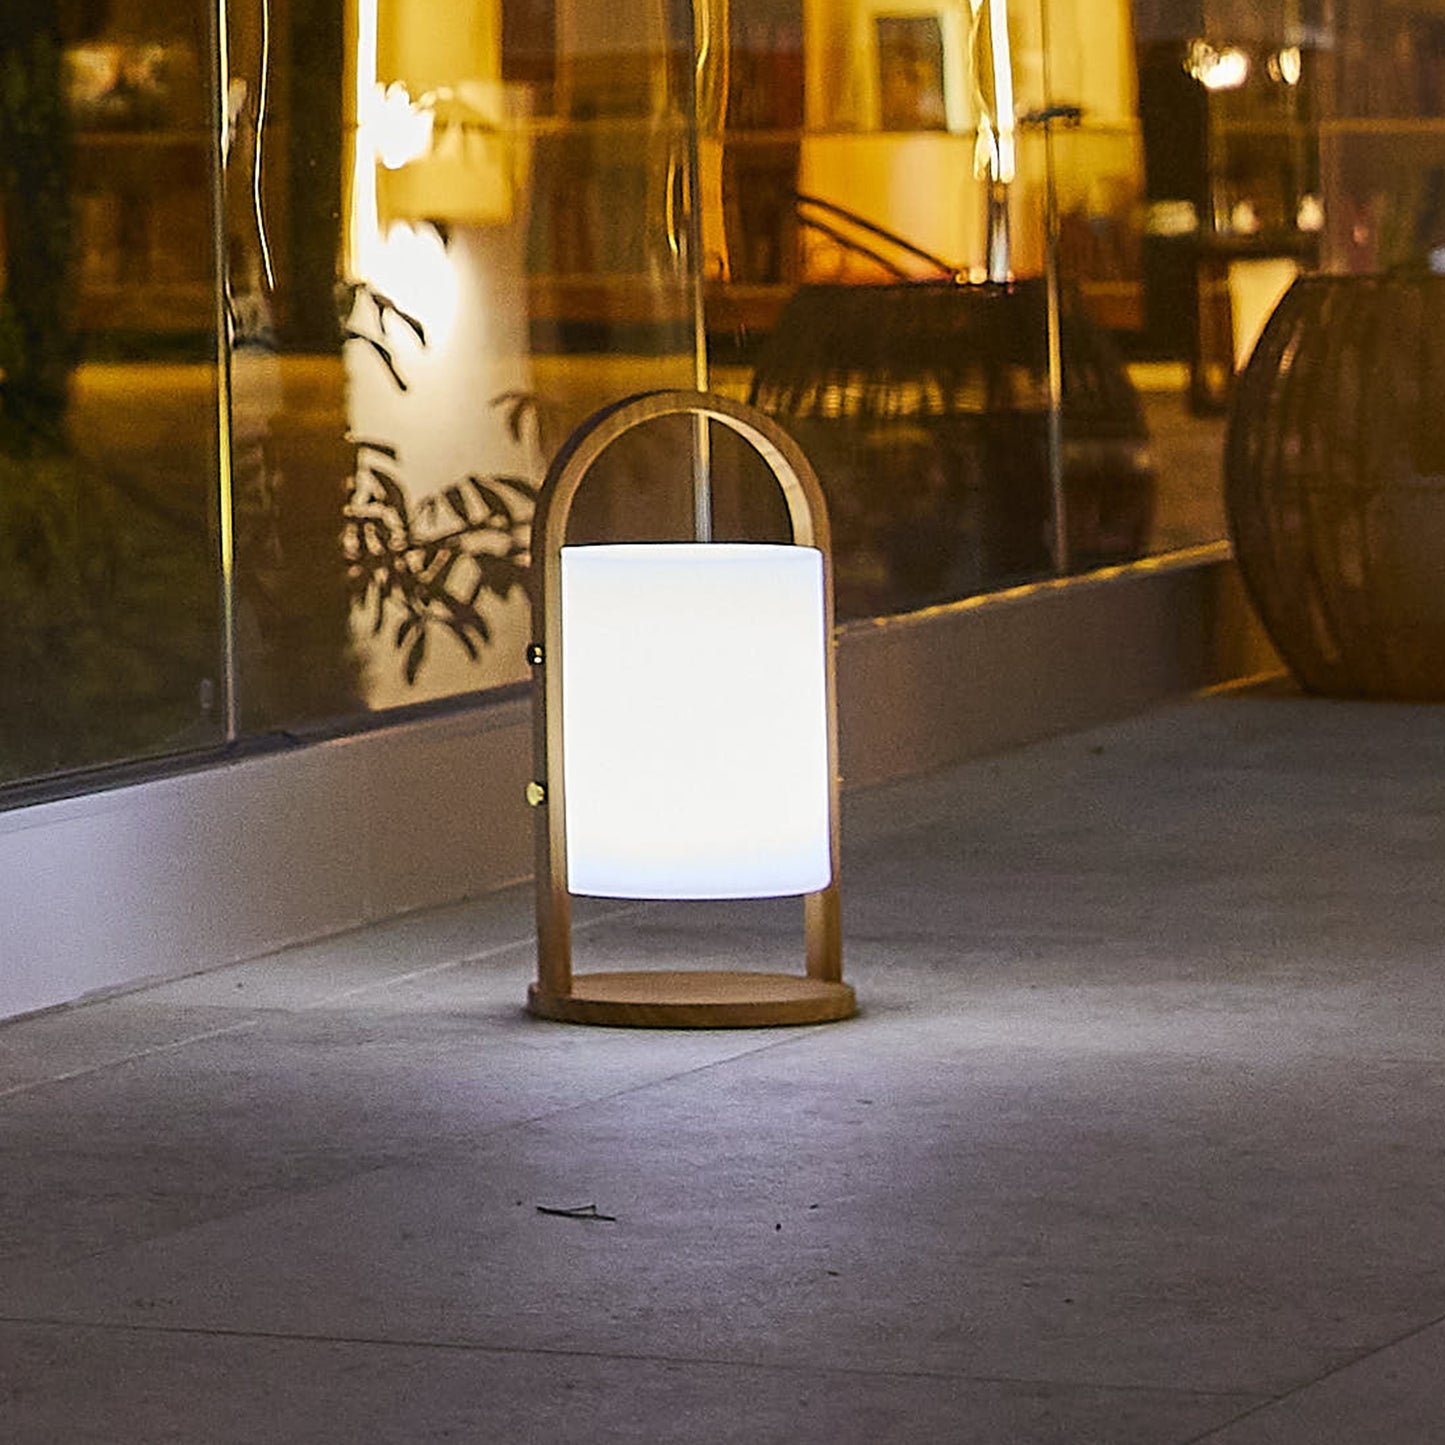 Lanterne sans fil design scandinave poignée bois naturel LED blanc chaud/blanc dimmable WOODY H37cm